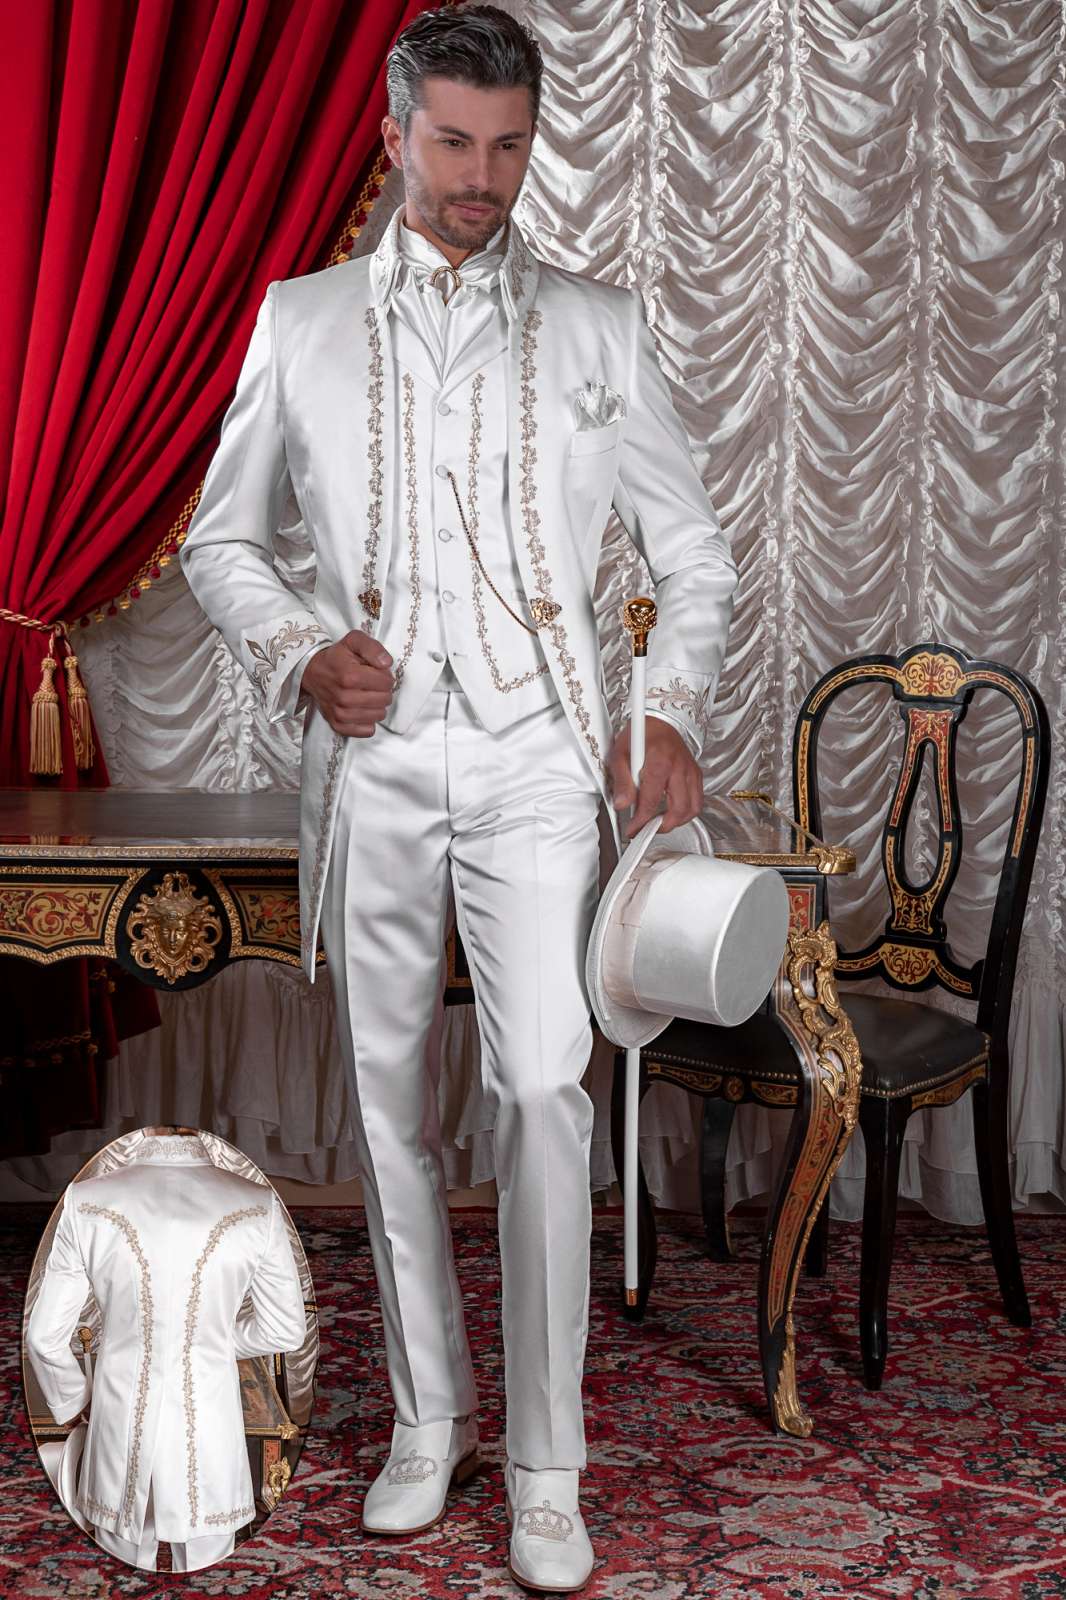 Traje de época barroco casaca blanca de raso con bordado oro y broche cristal.. Traje de novio 2582 Mario Moyano